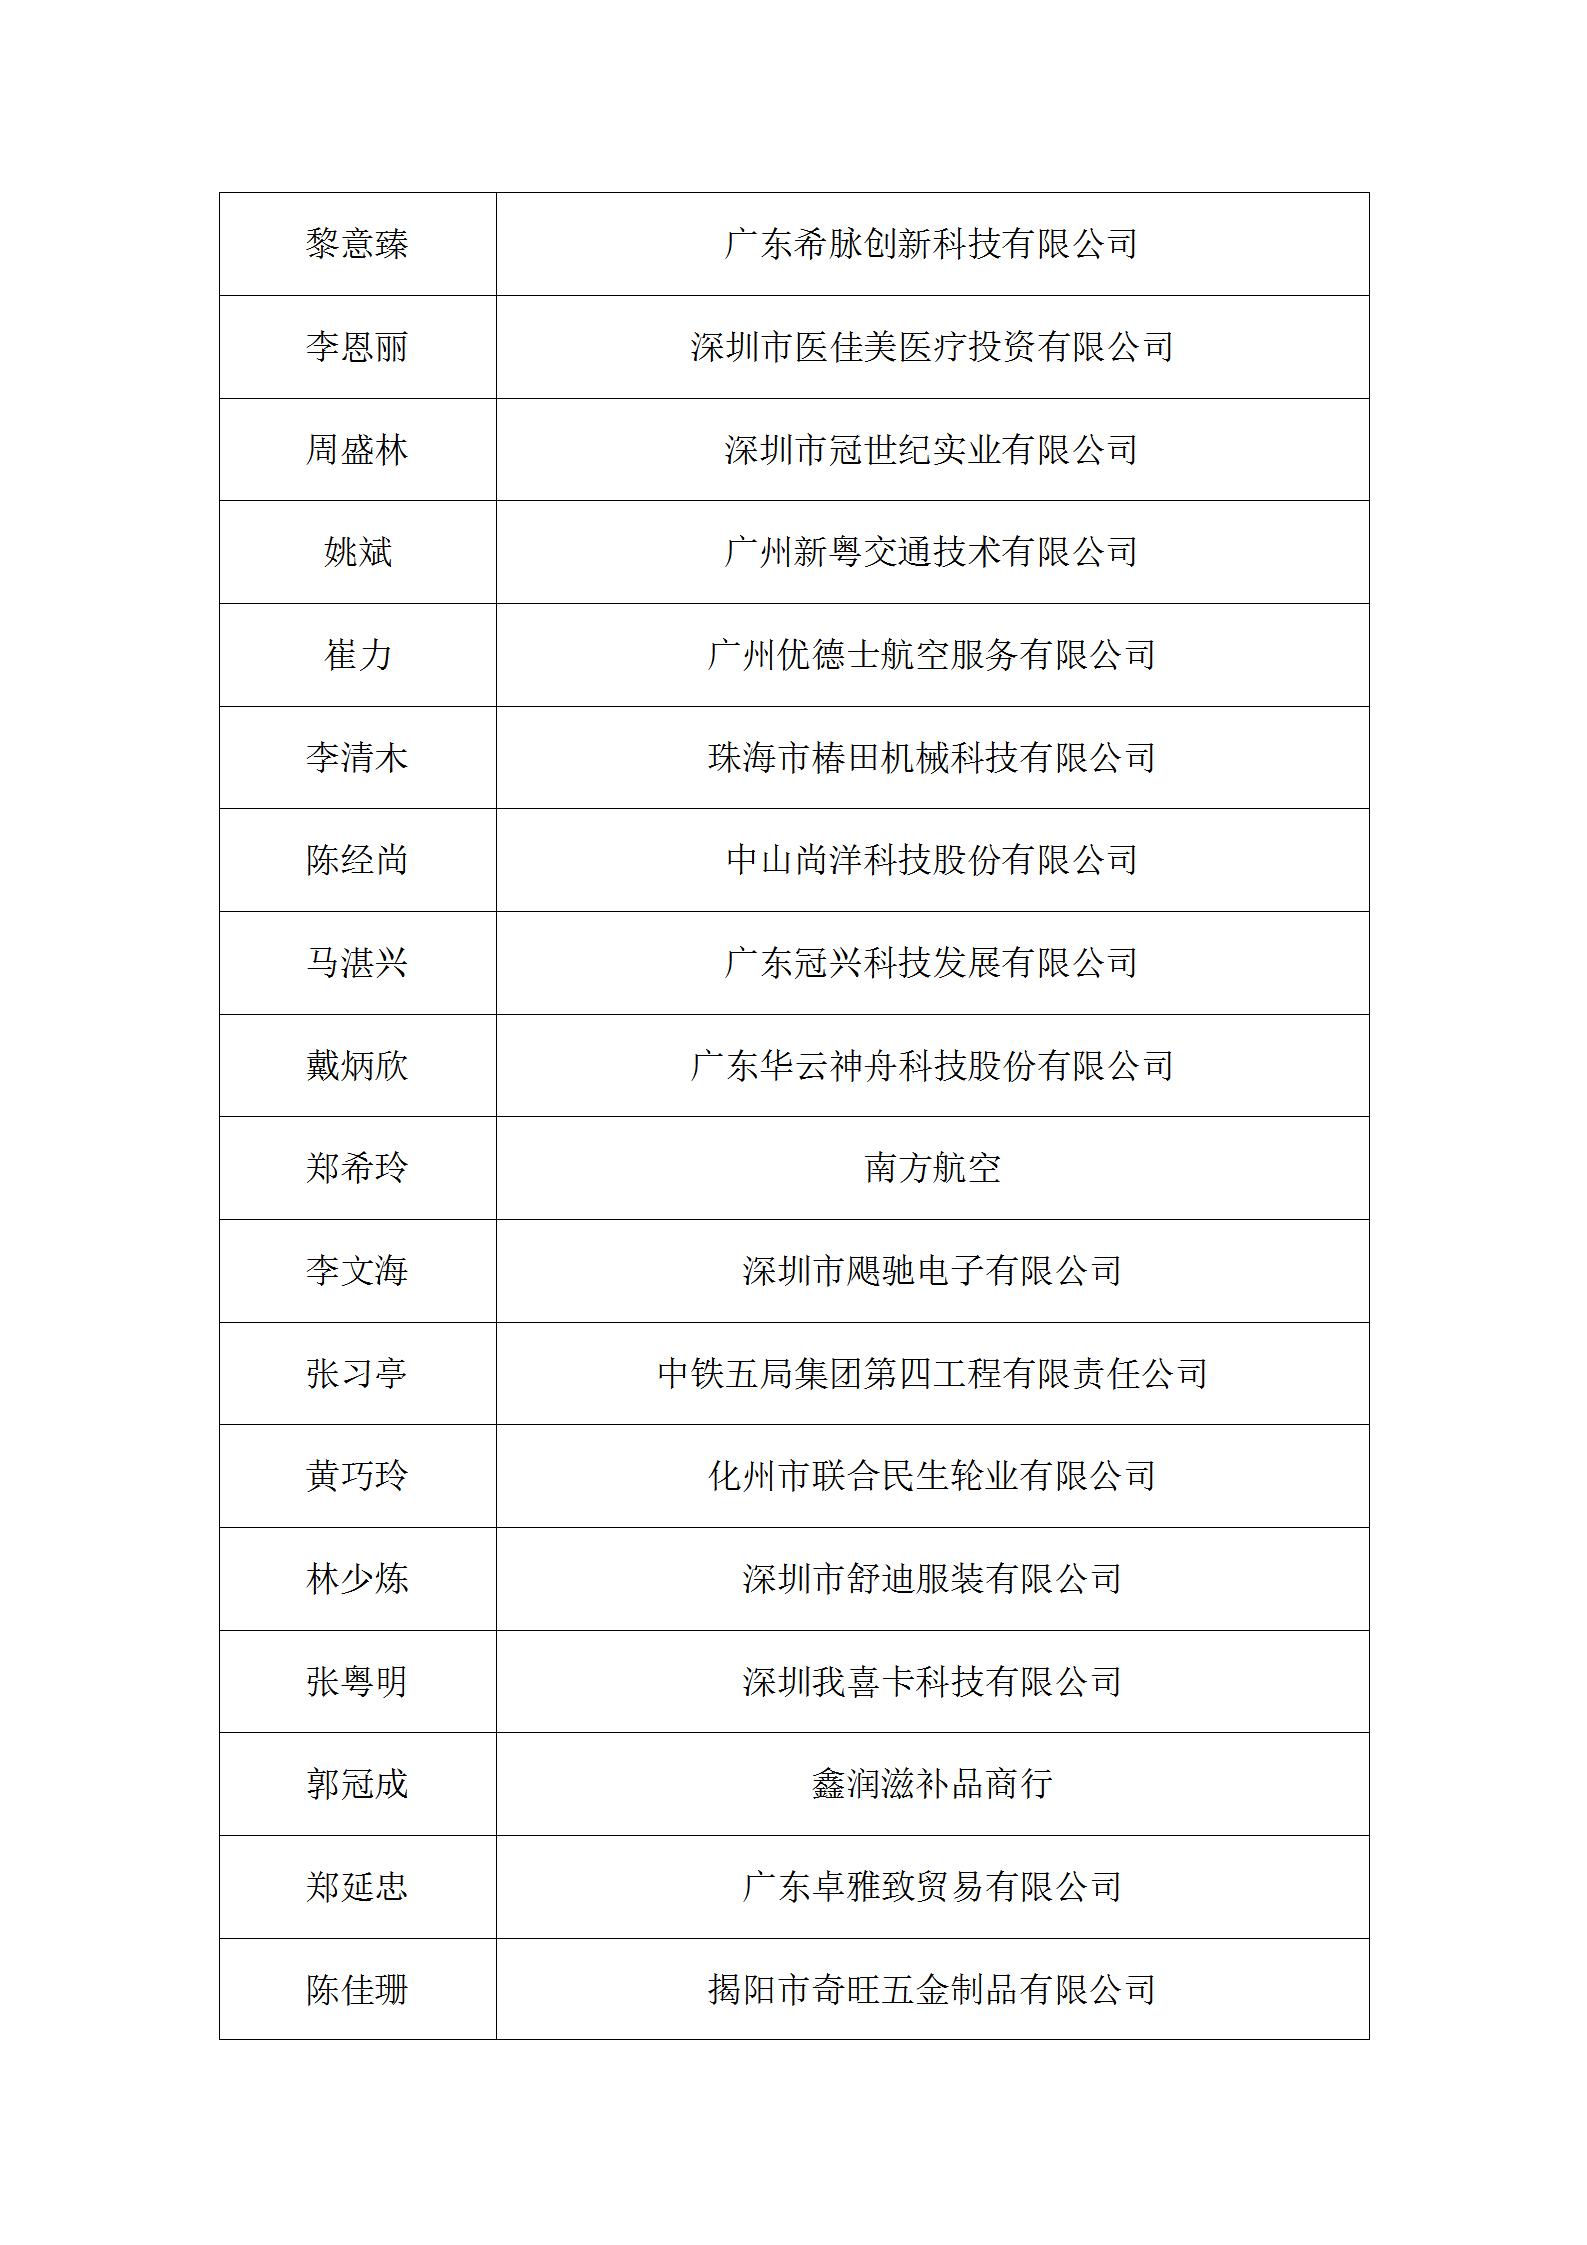 经省经企联第七届换届领导小组审查确认会员名单公告_29.jpg